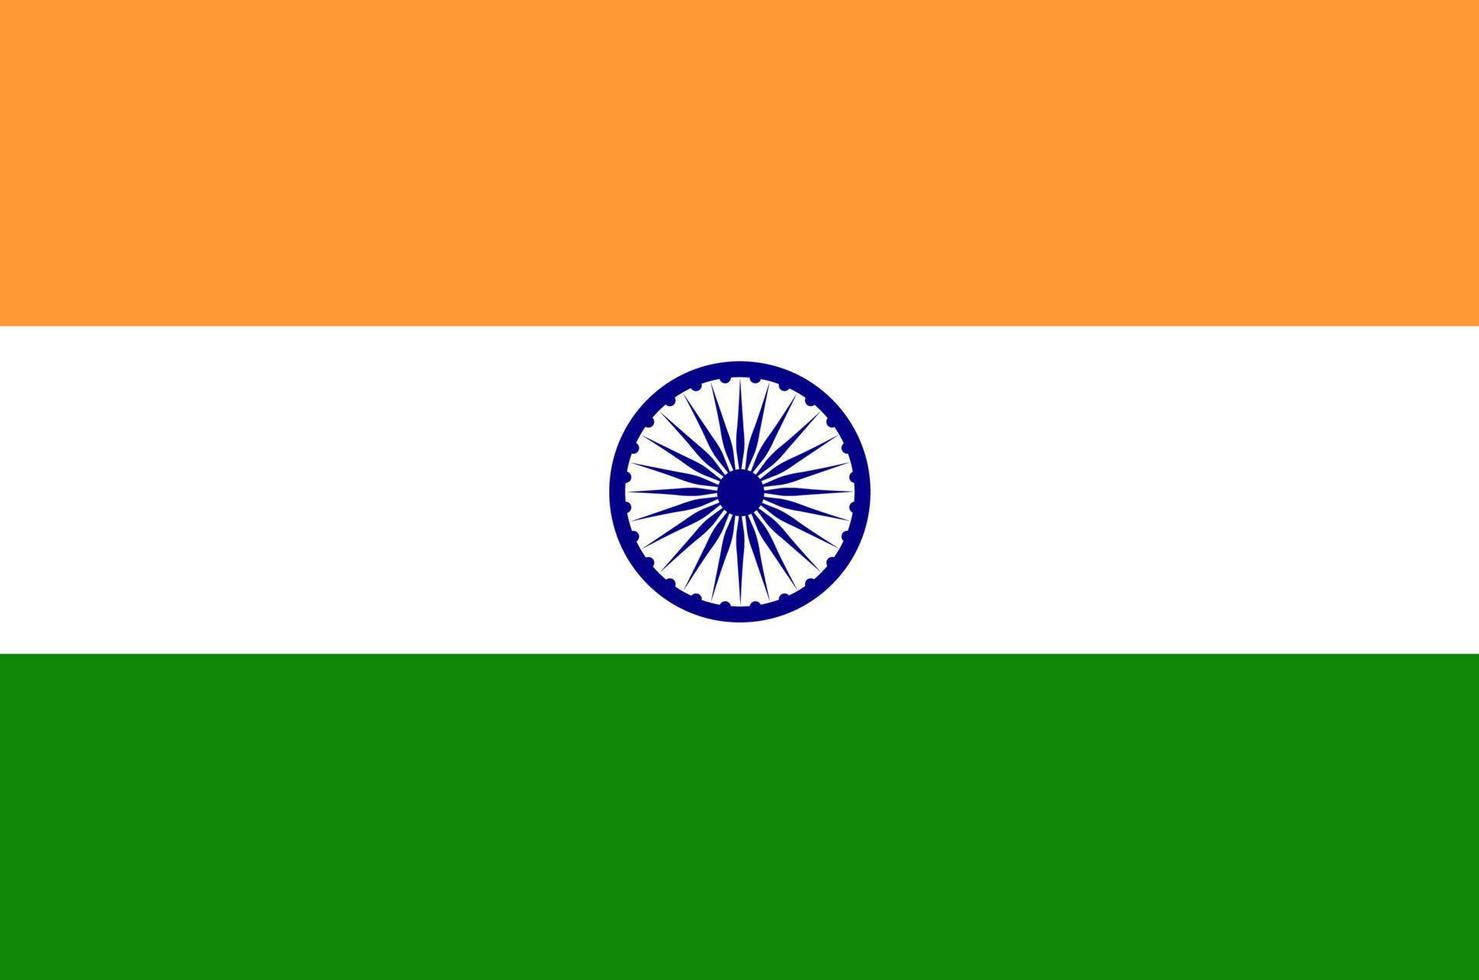 drapeau de la dimension et des couleurs de la proportion india.official. illustration vectorielle vecteur